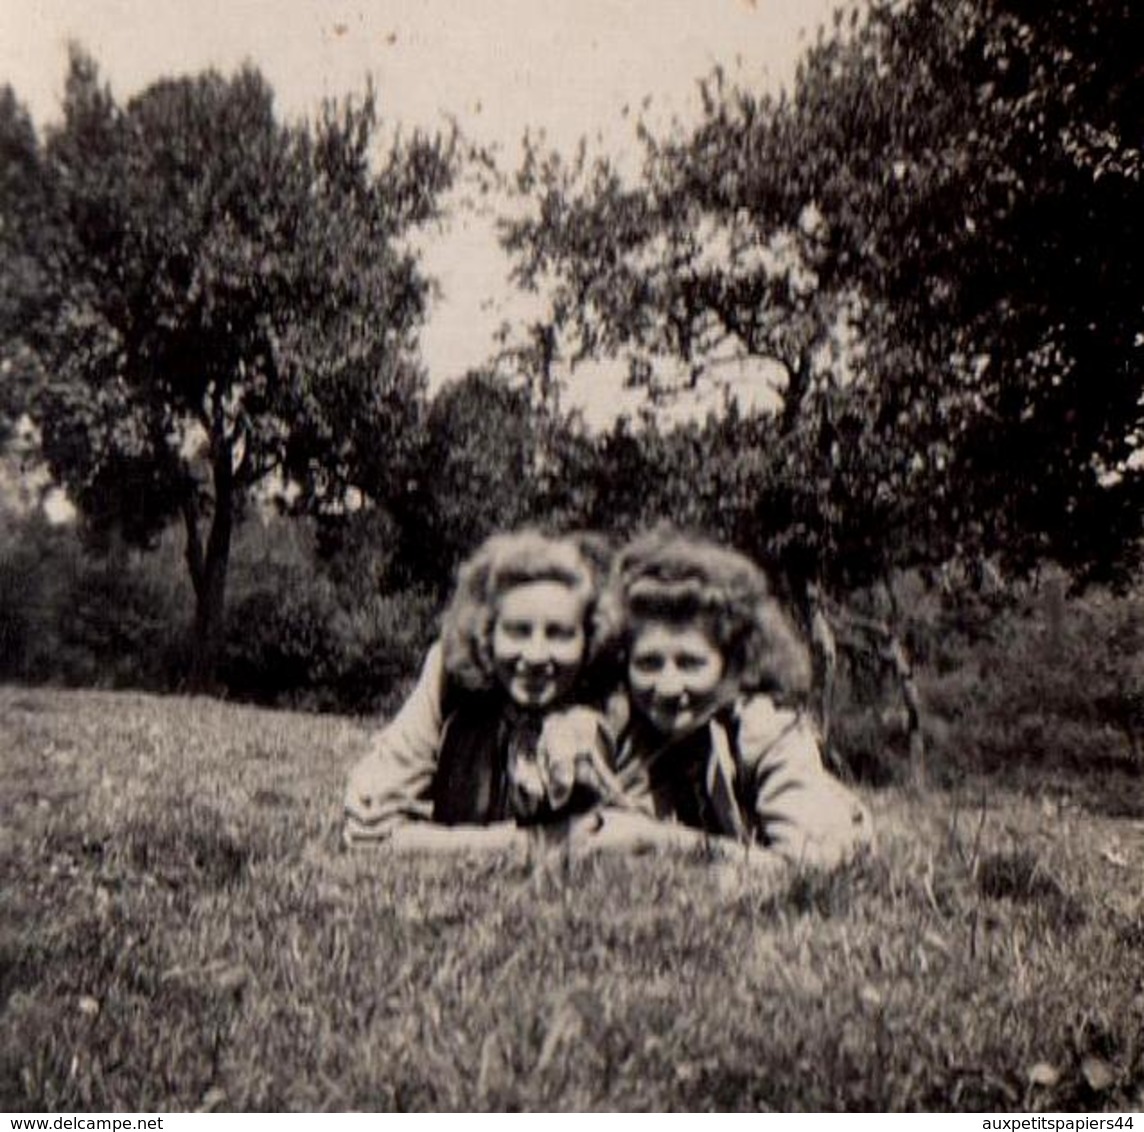 Photo Originale Duo De Pin-Up à Plat Ventre Sur L'Herbe, Pour Une Journée De Campagne En Juin 1942 - Pin-ups